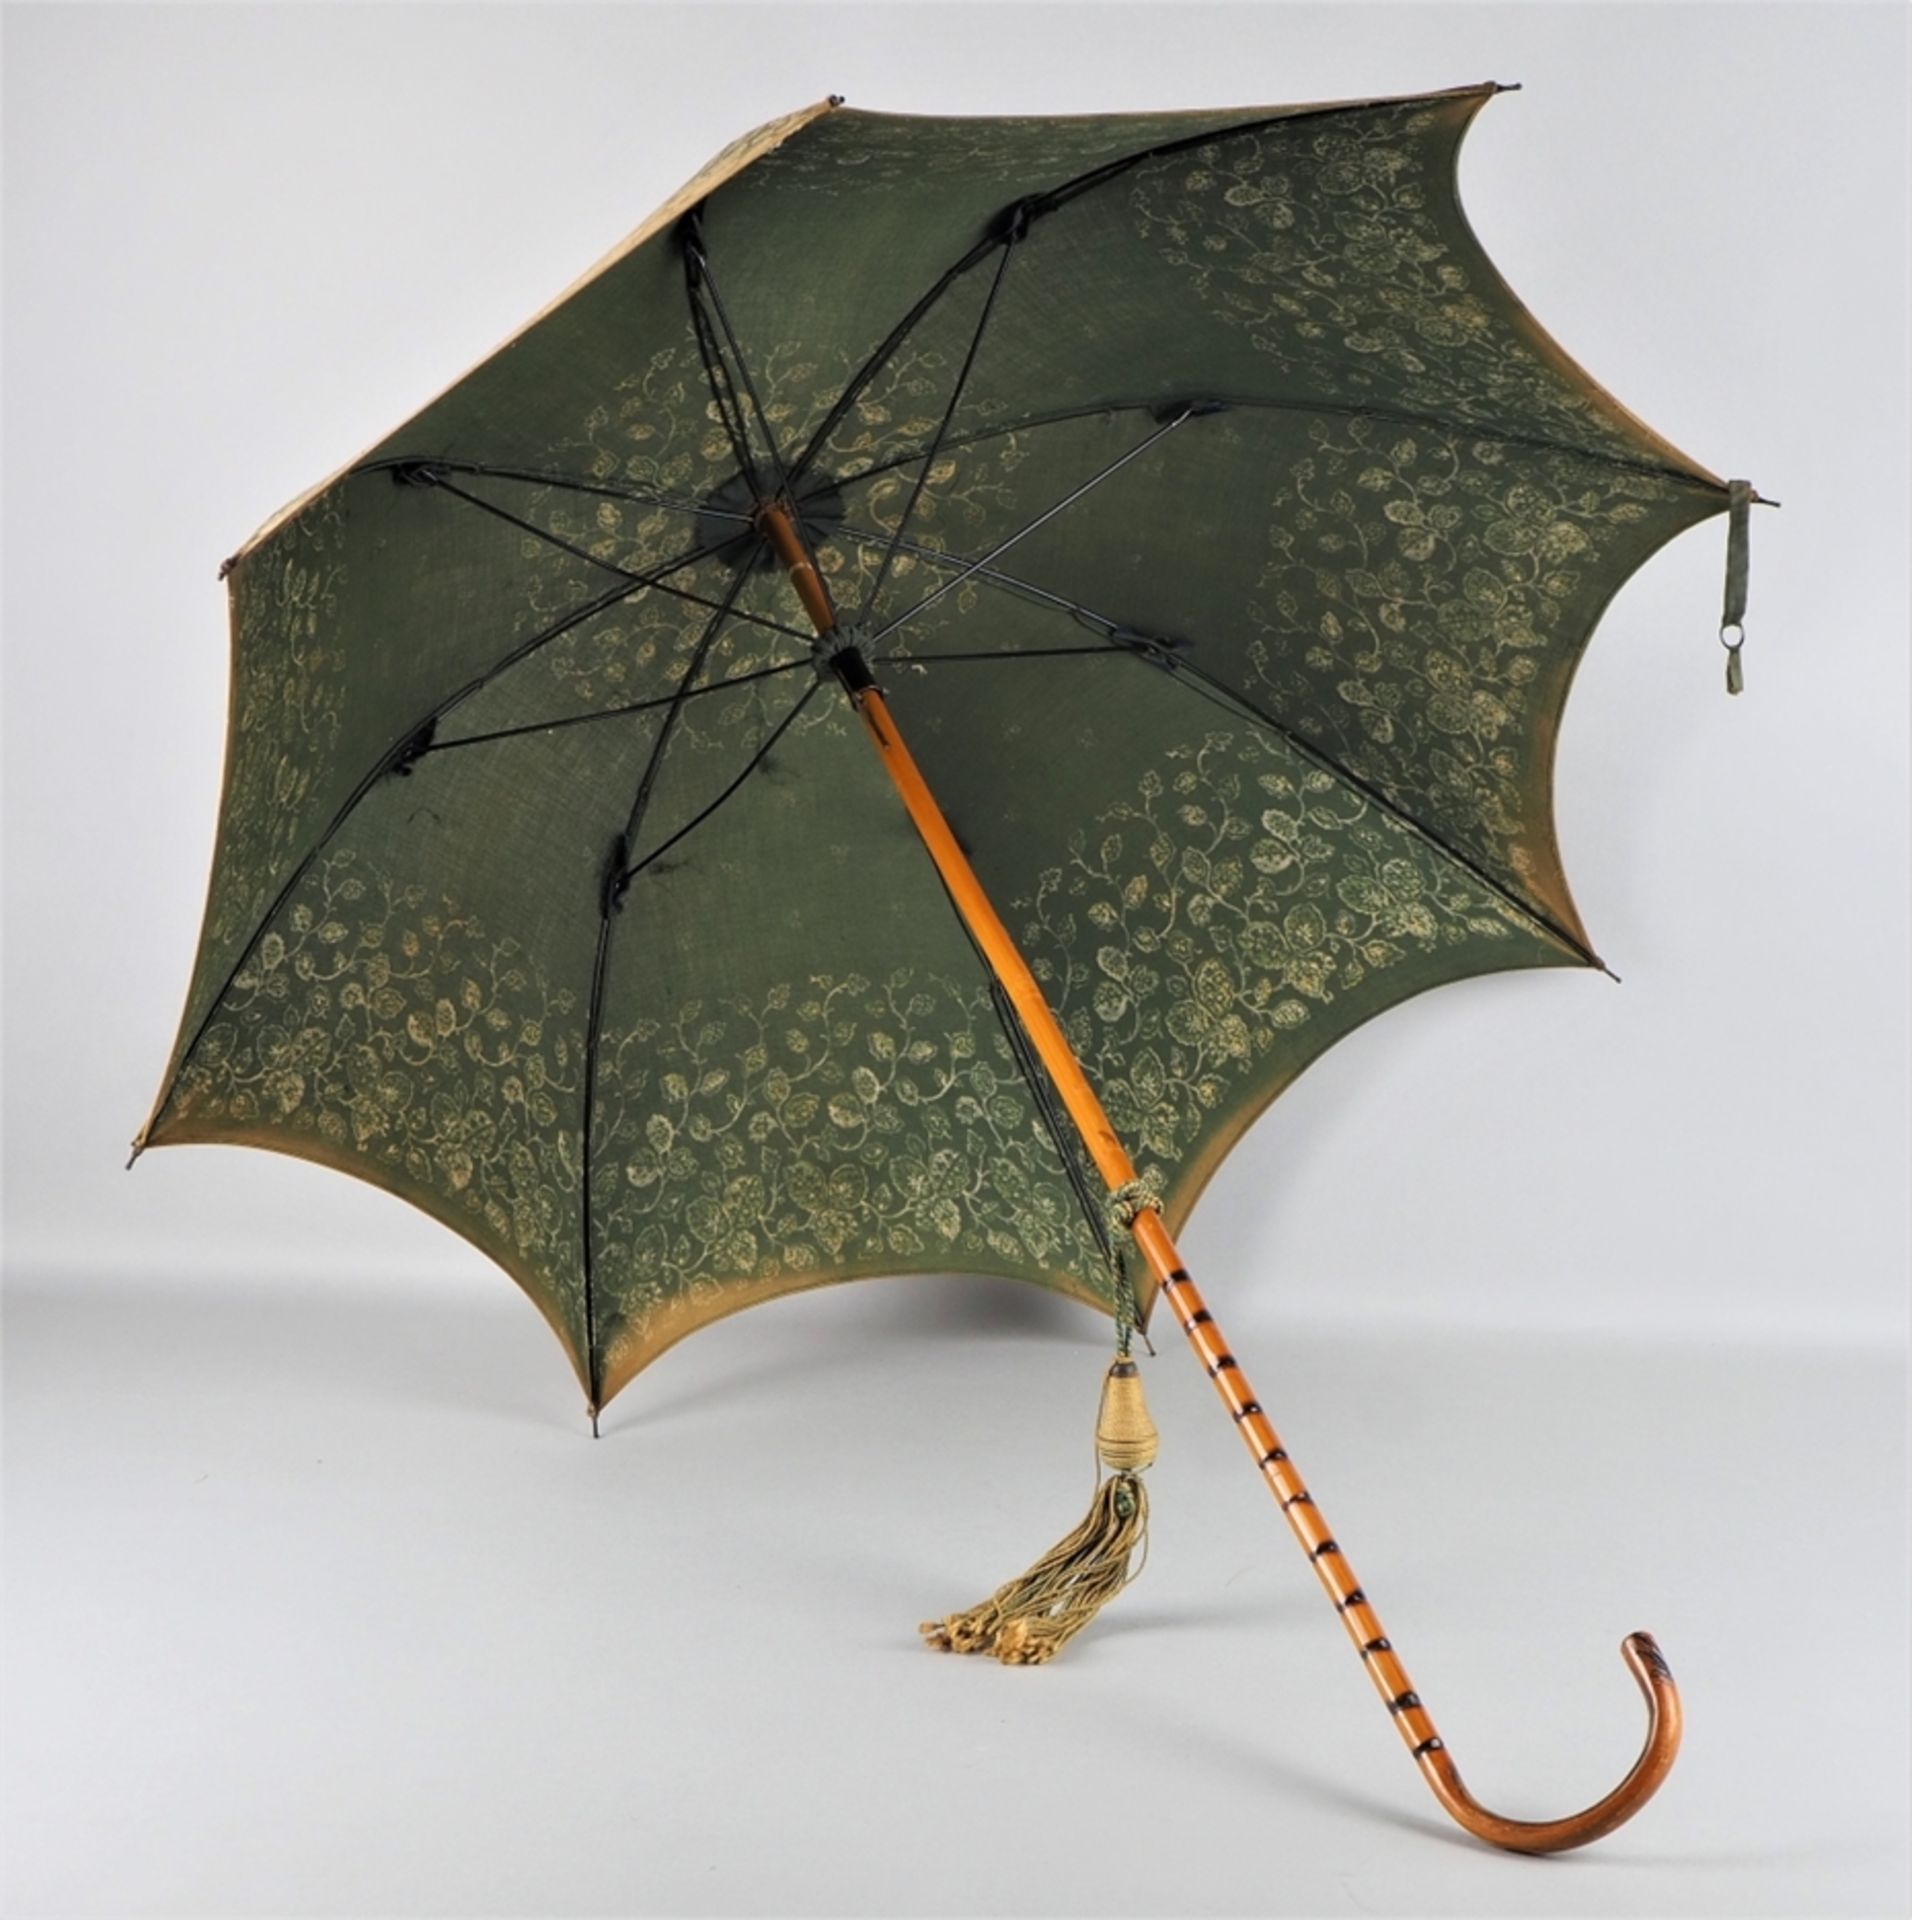 Antique umbrella / parasol around 1900